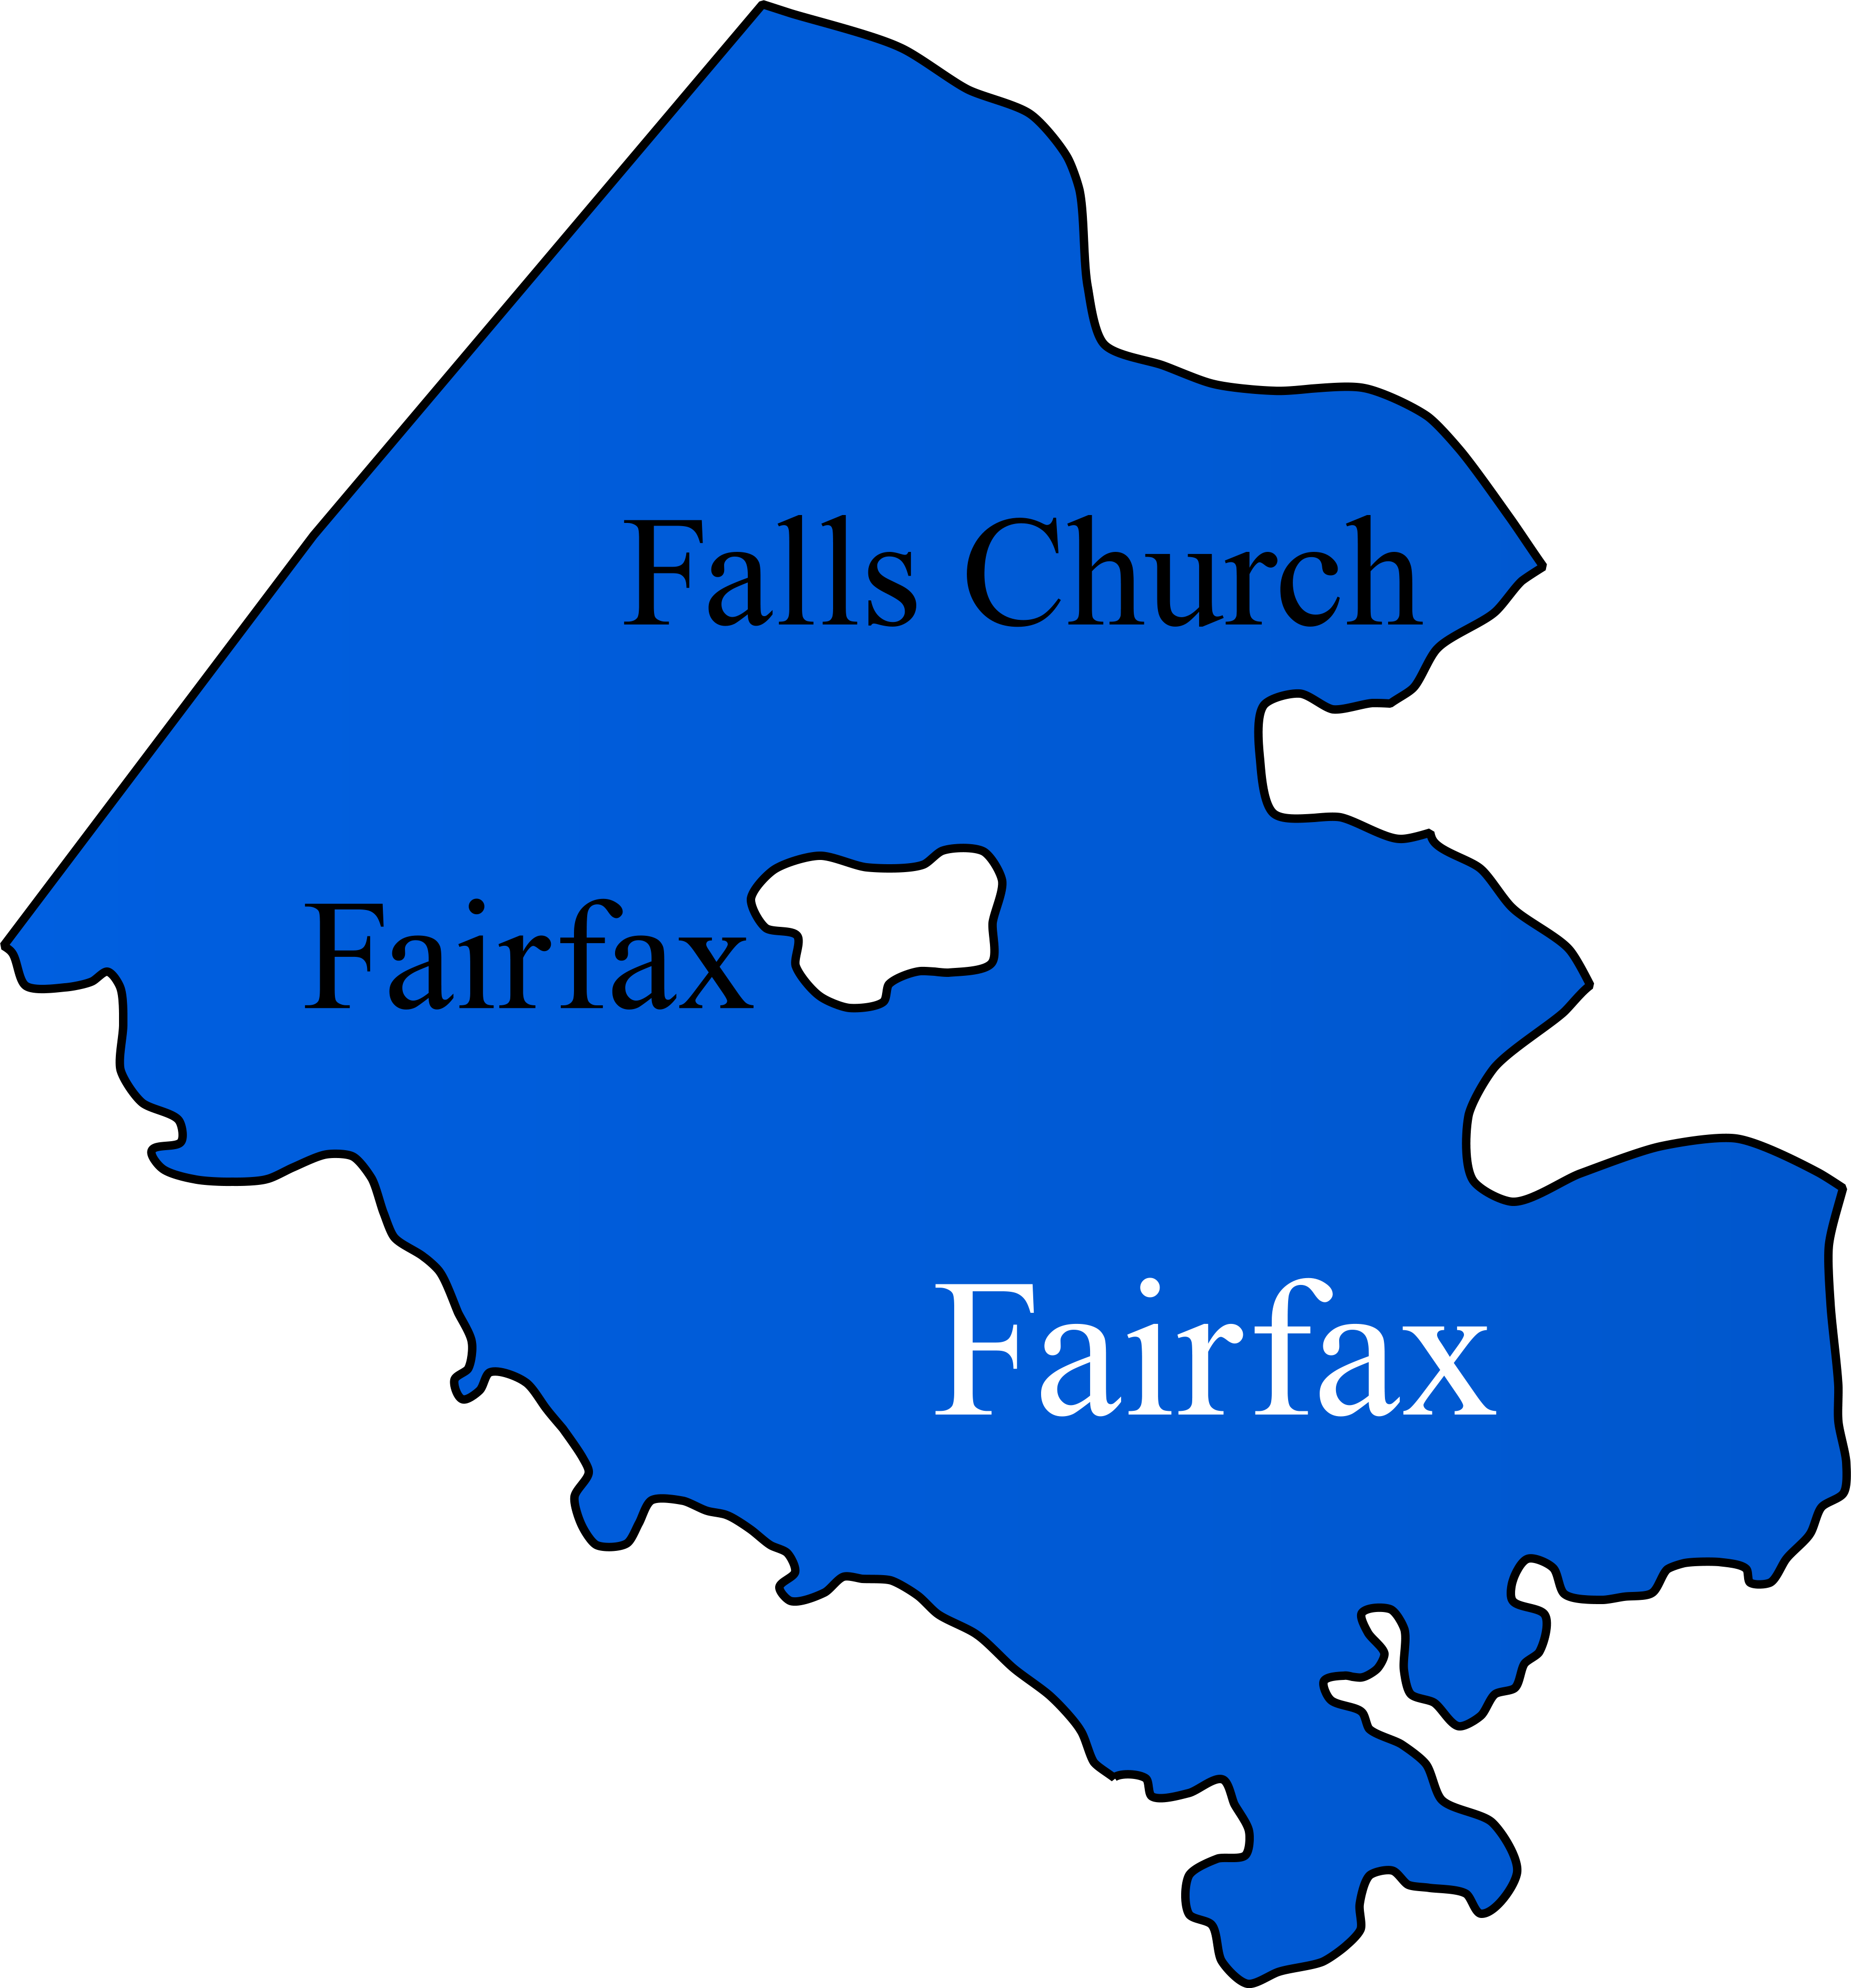 Fairfax County